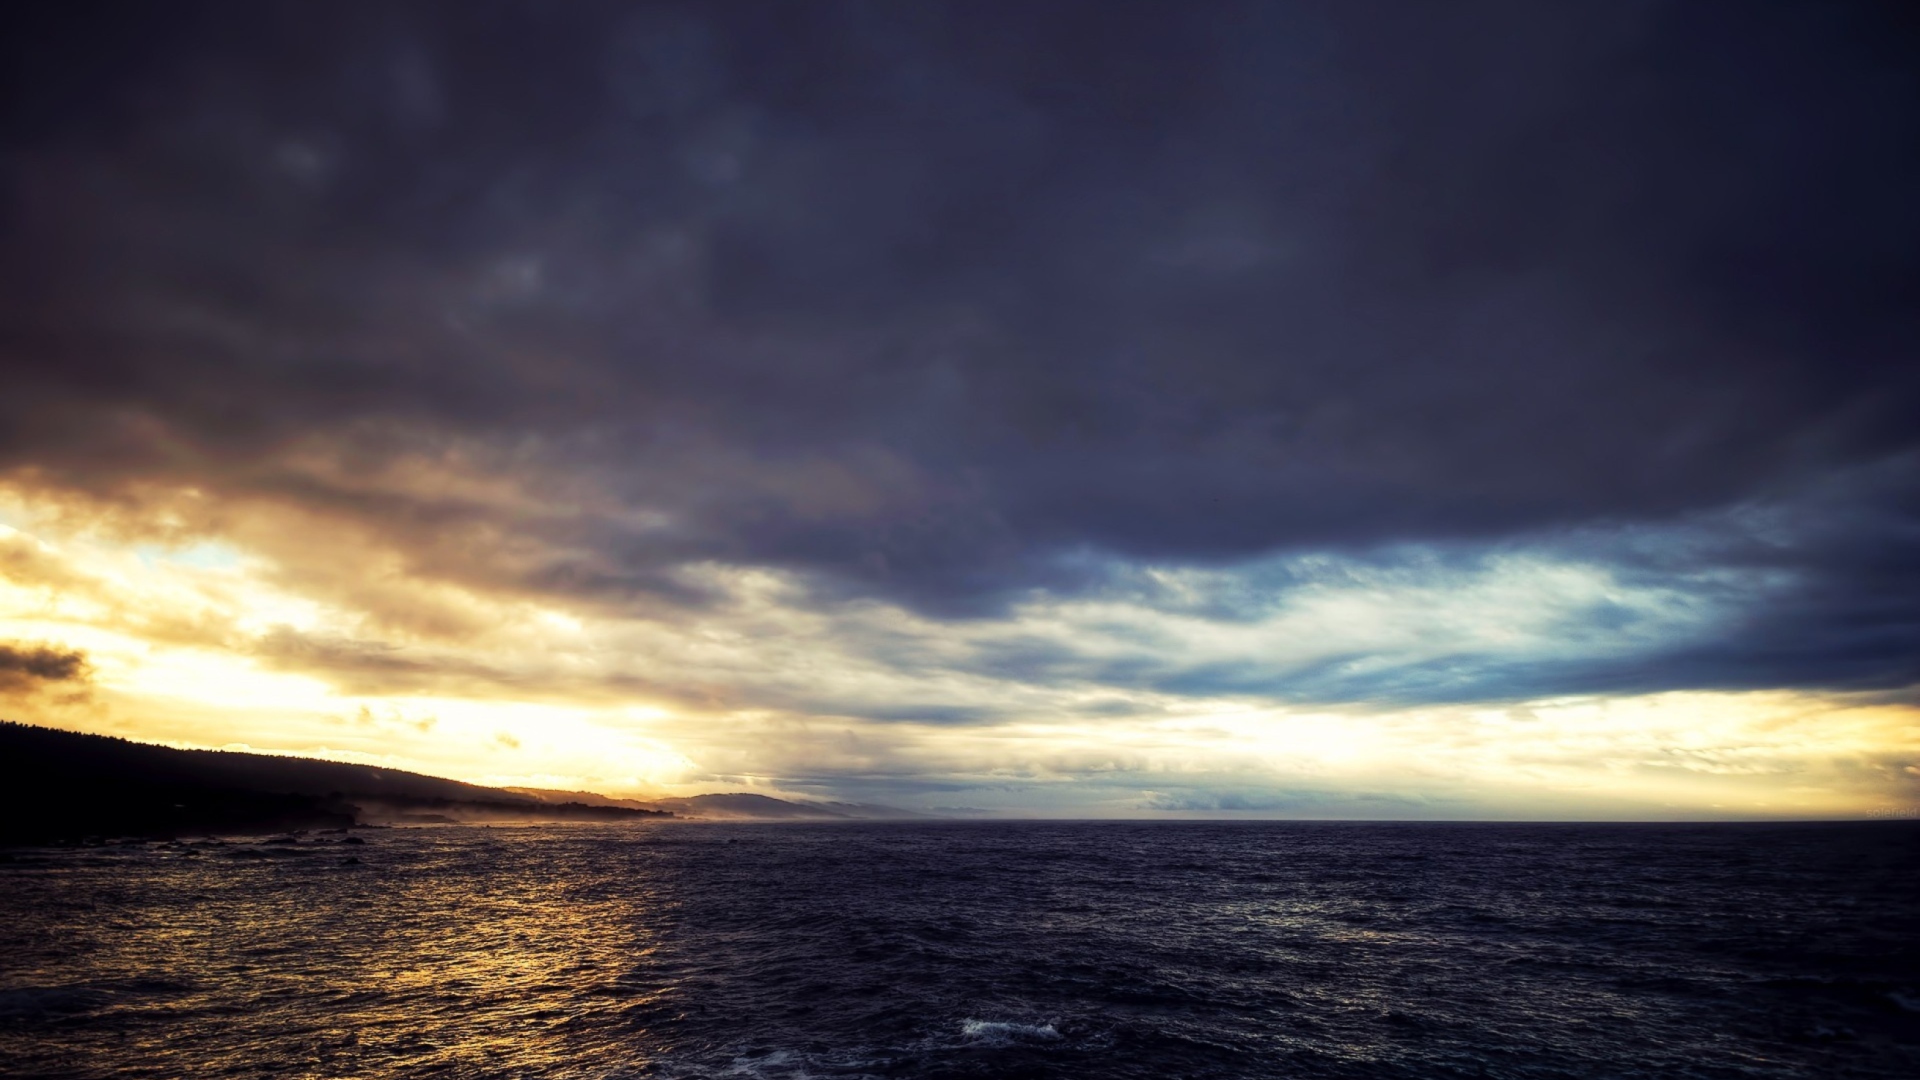 Обои Cloudy Sunset And Black Sea 1920x1080